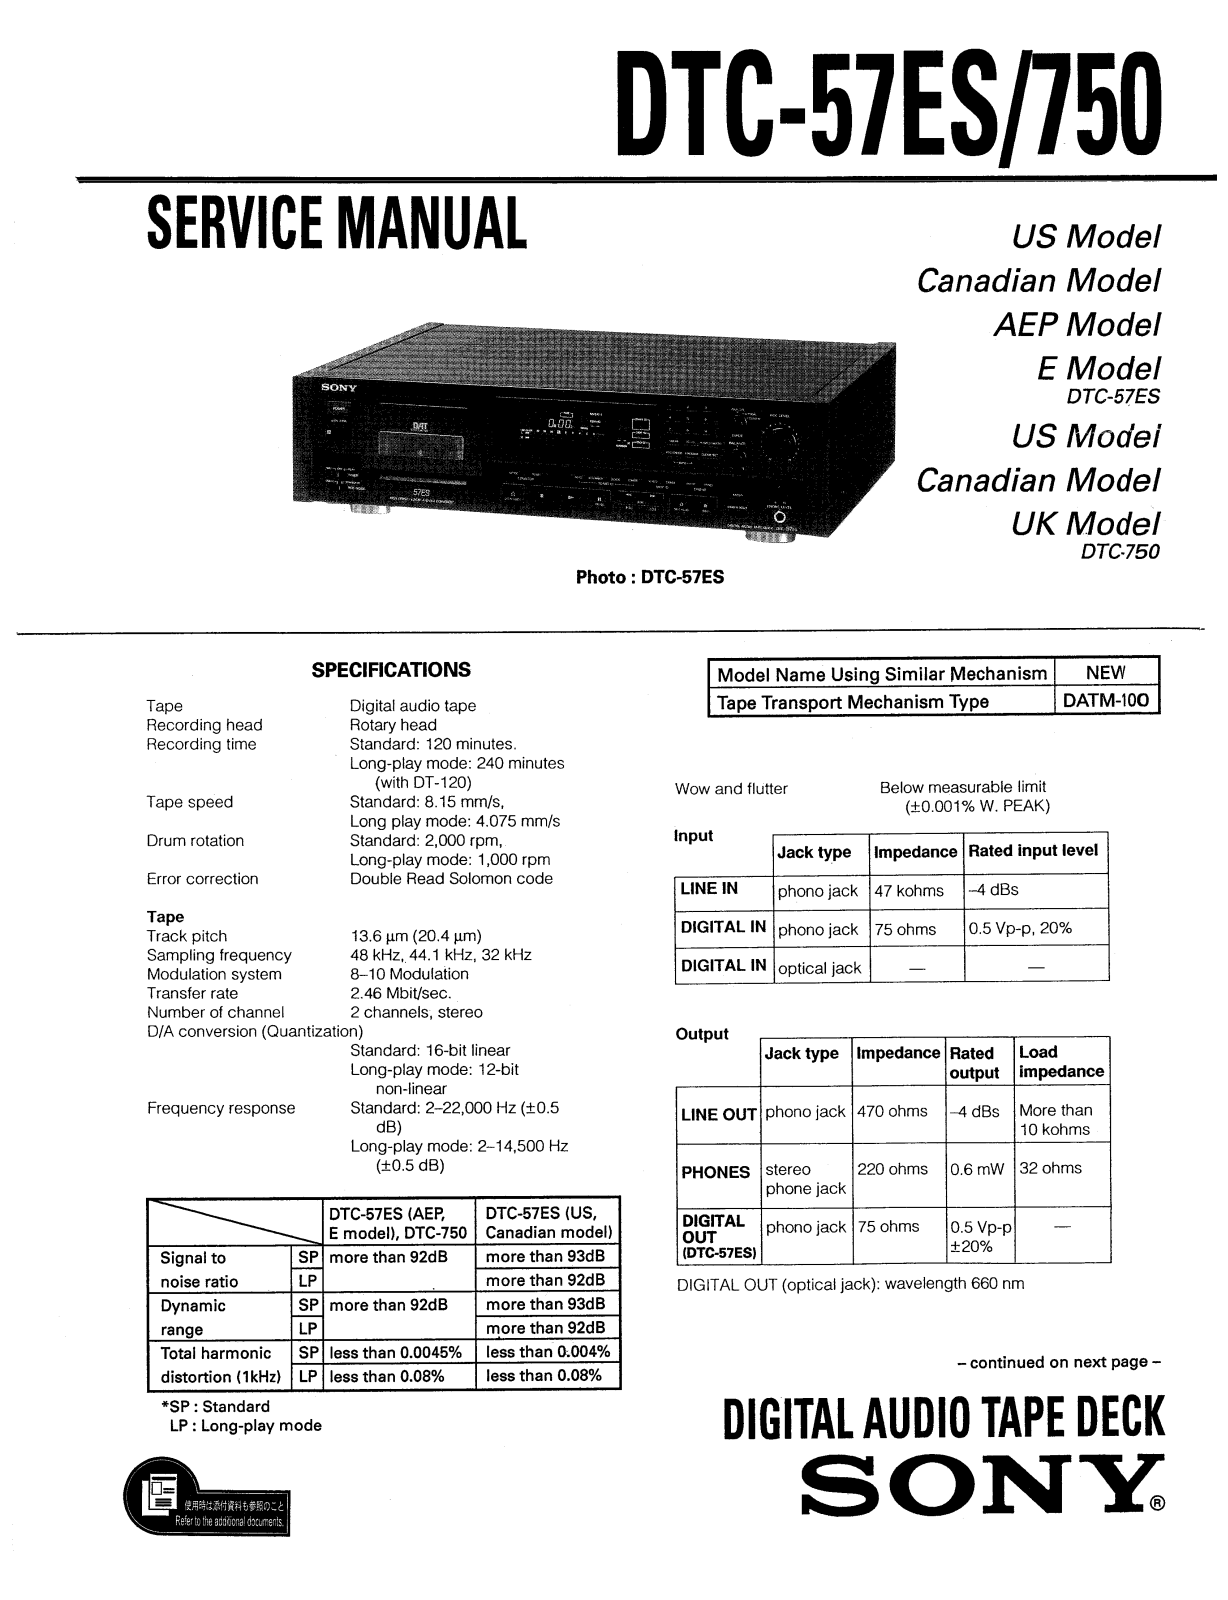 Sony DTC-570 Service manual